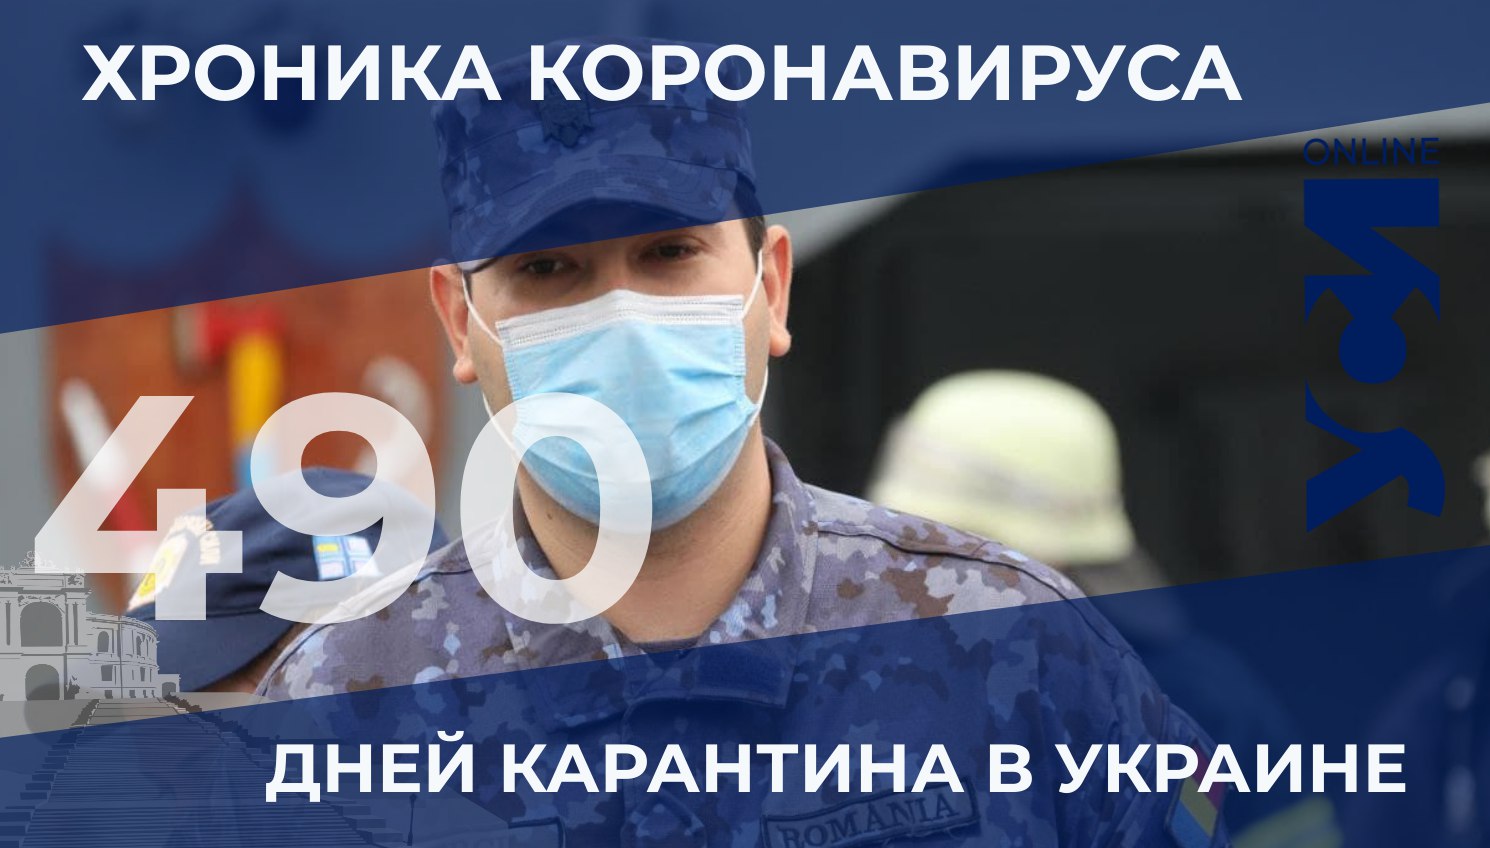 Хроники коронавируса: в Одесской области – 36 новых заболевших «фото»